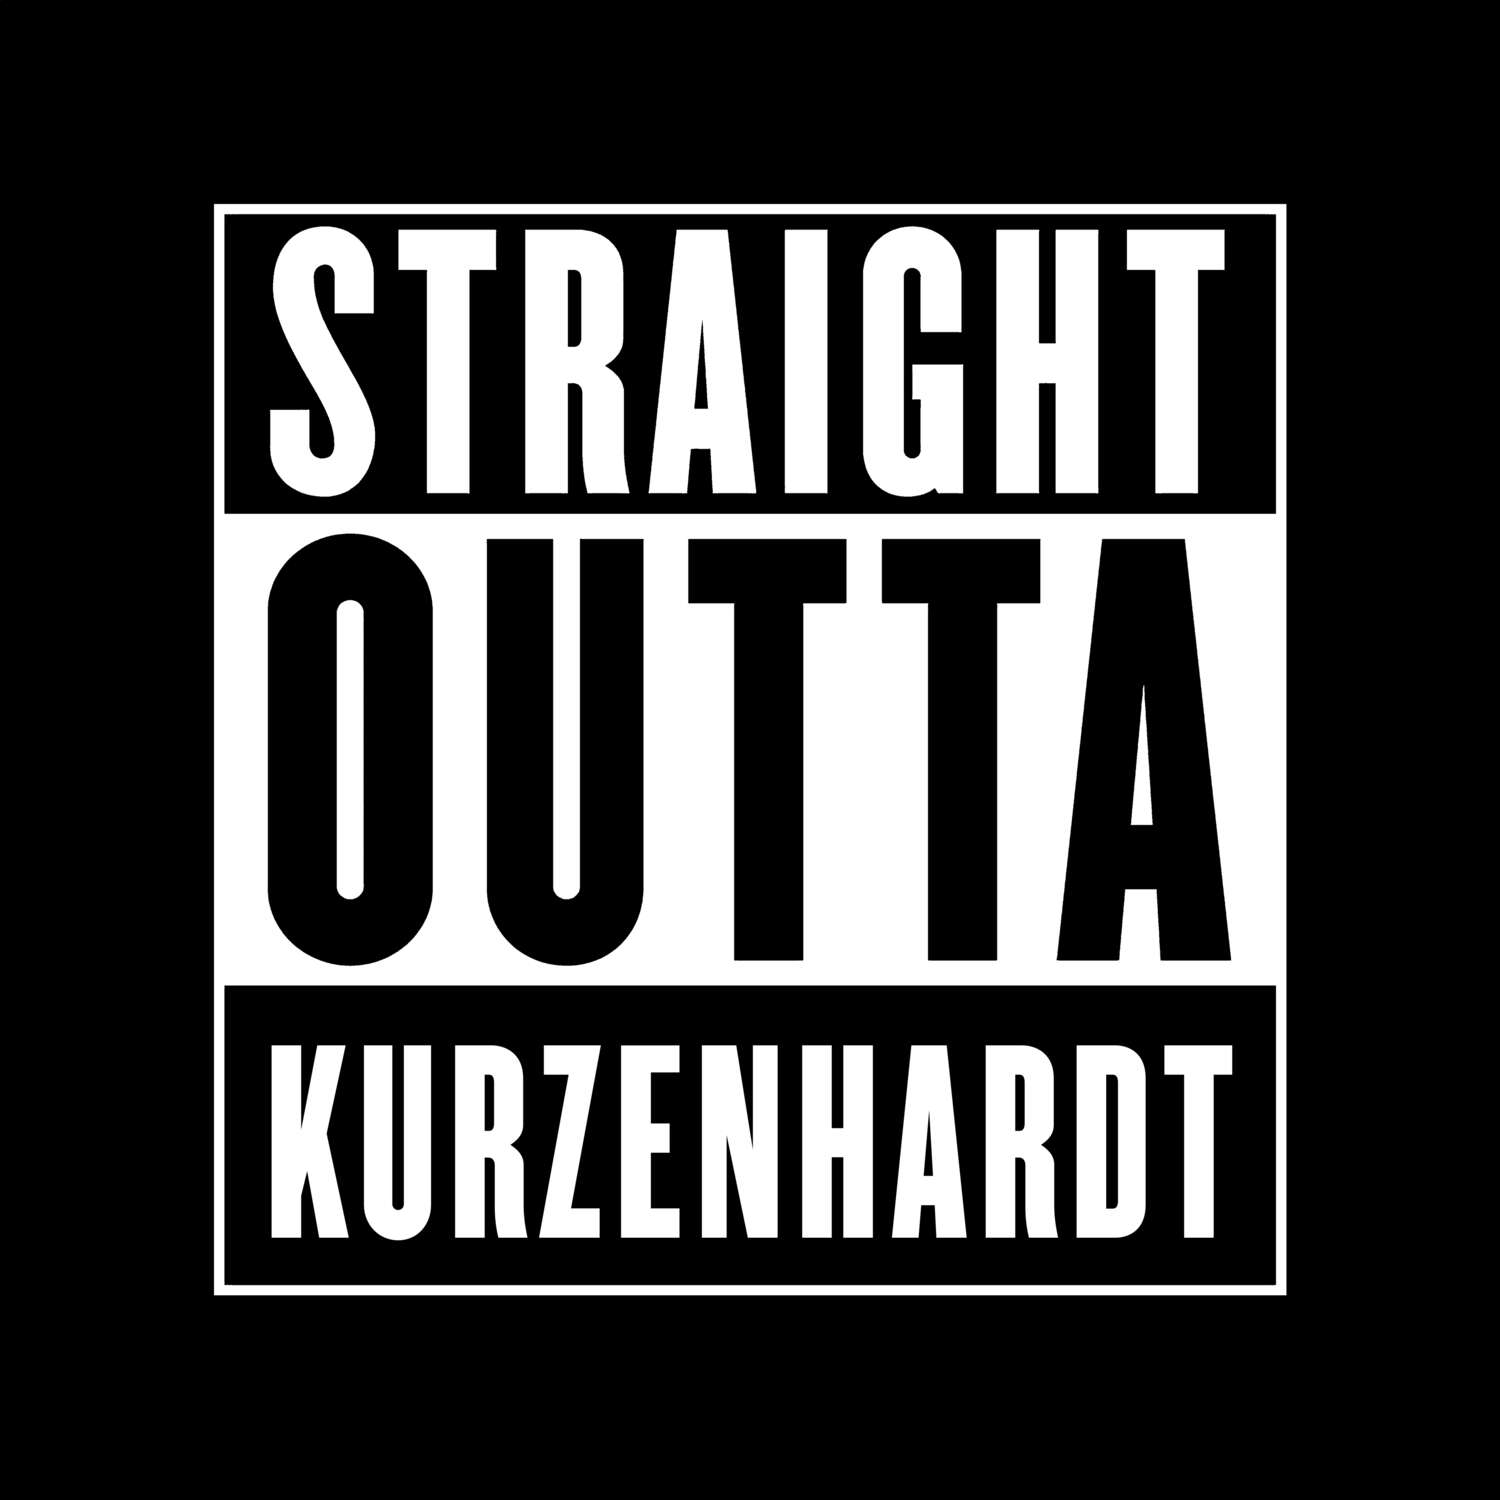 Kurzenhardt T-Shirt »Straight Outta«